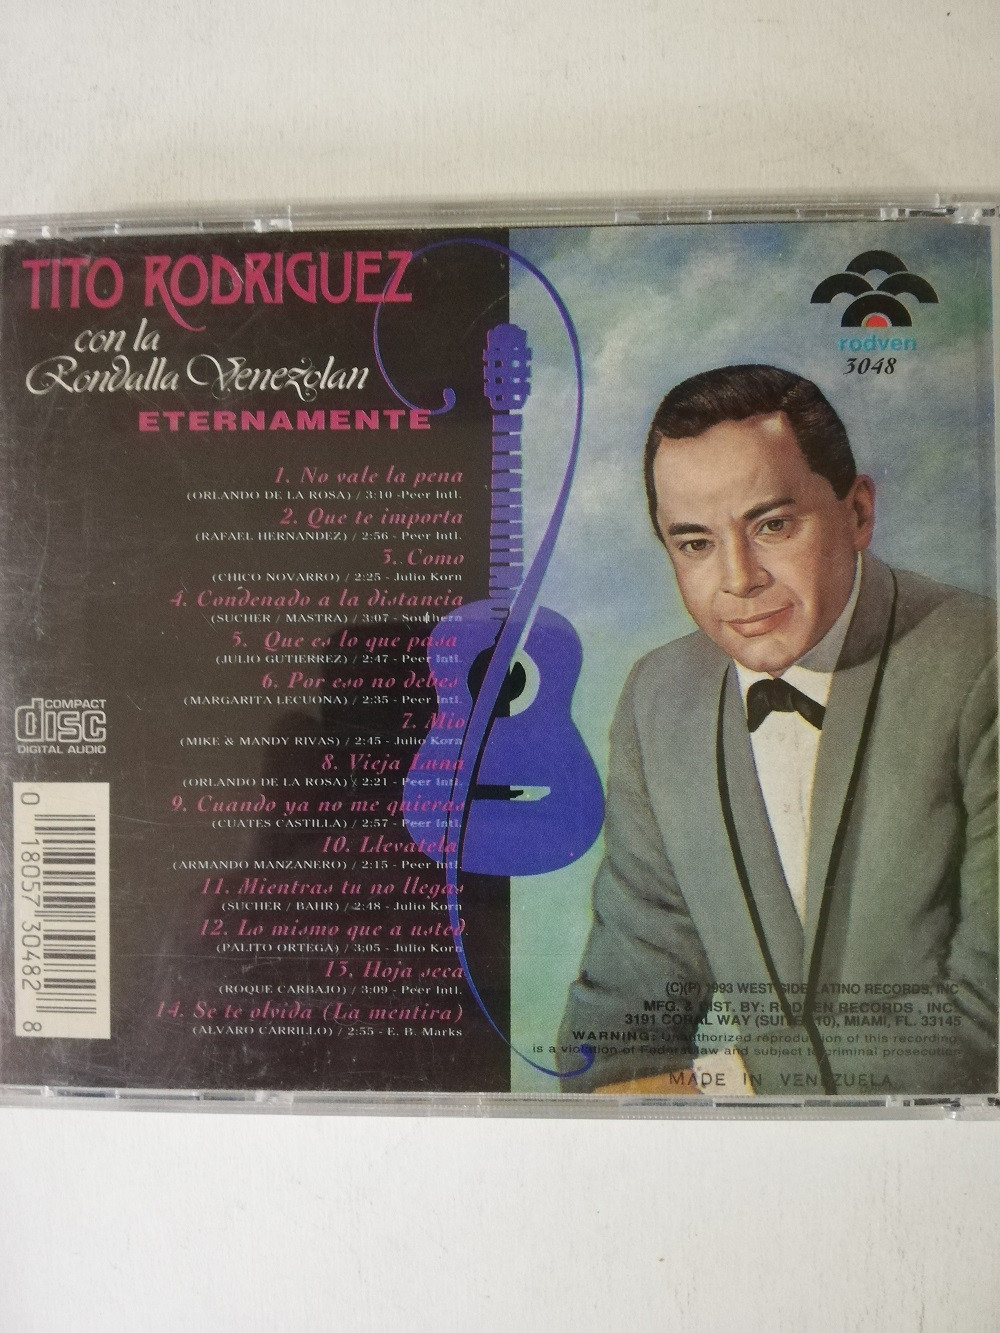 Imagen CD TITO RODRIGUEZ - ETERNAMENTE, CON LA RONDALLA VENEZOLANA 2